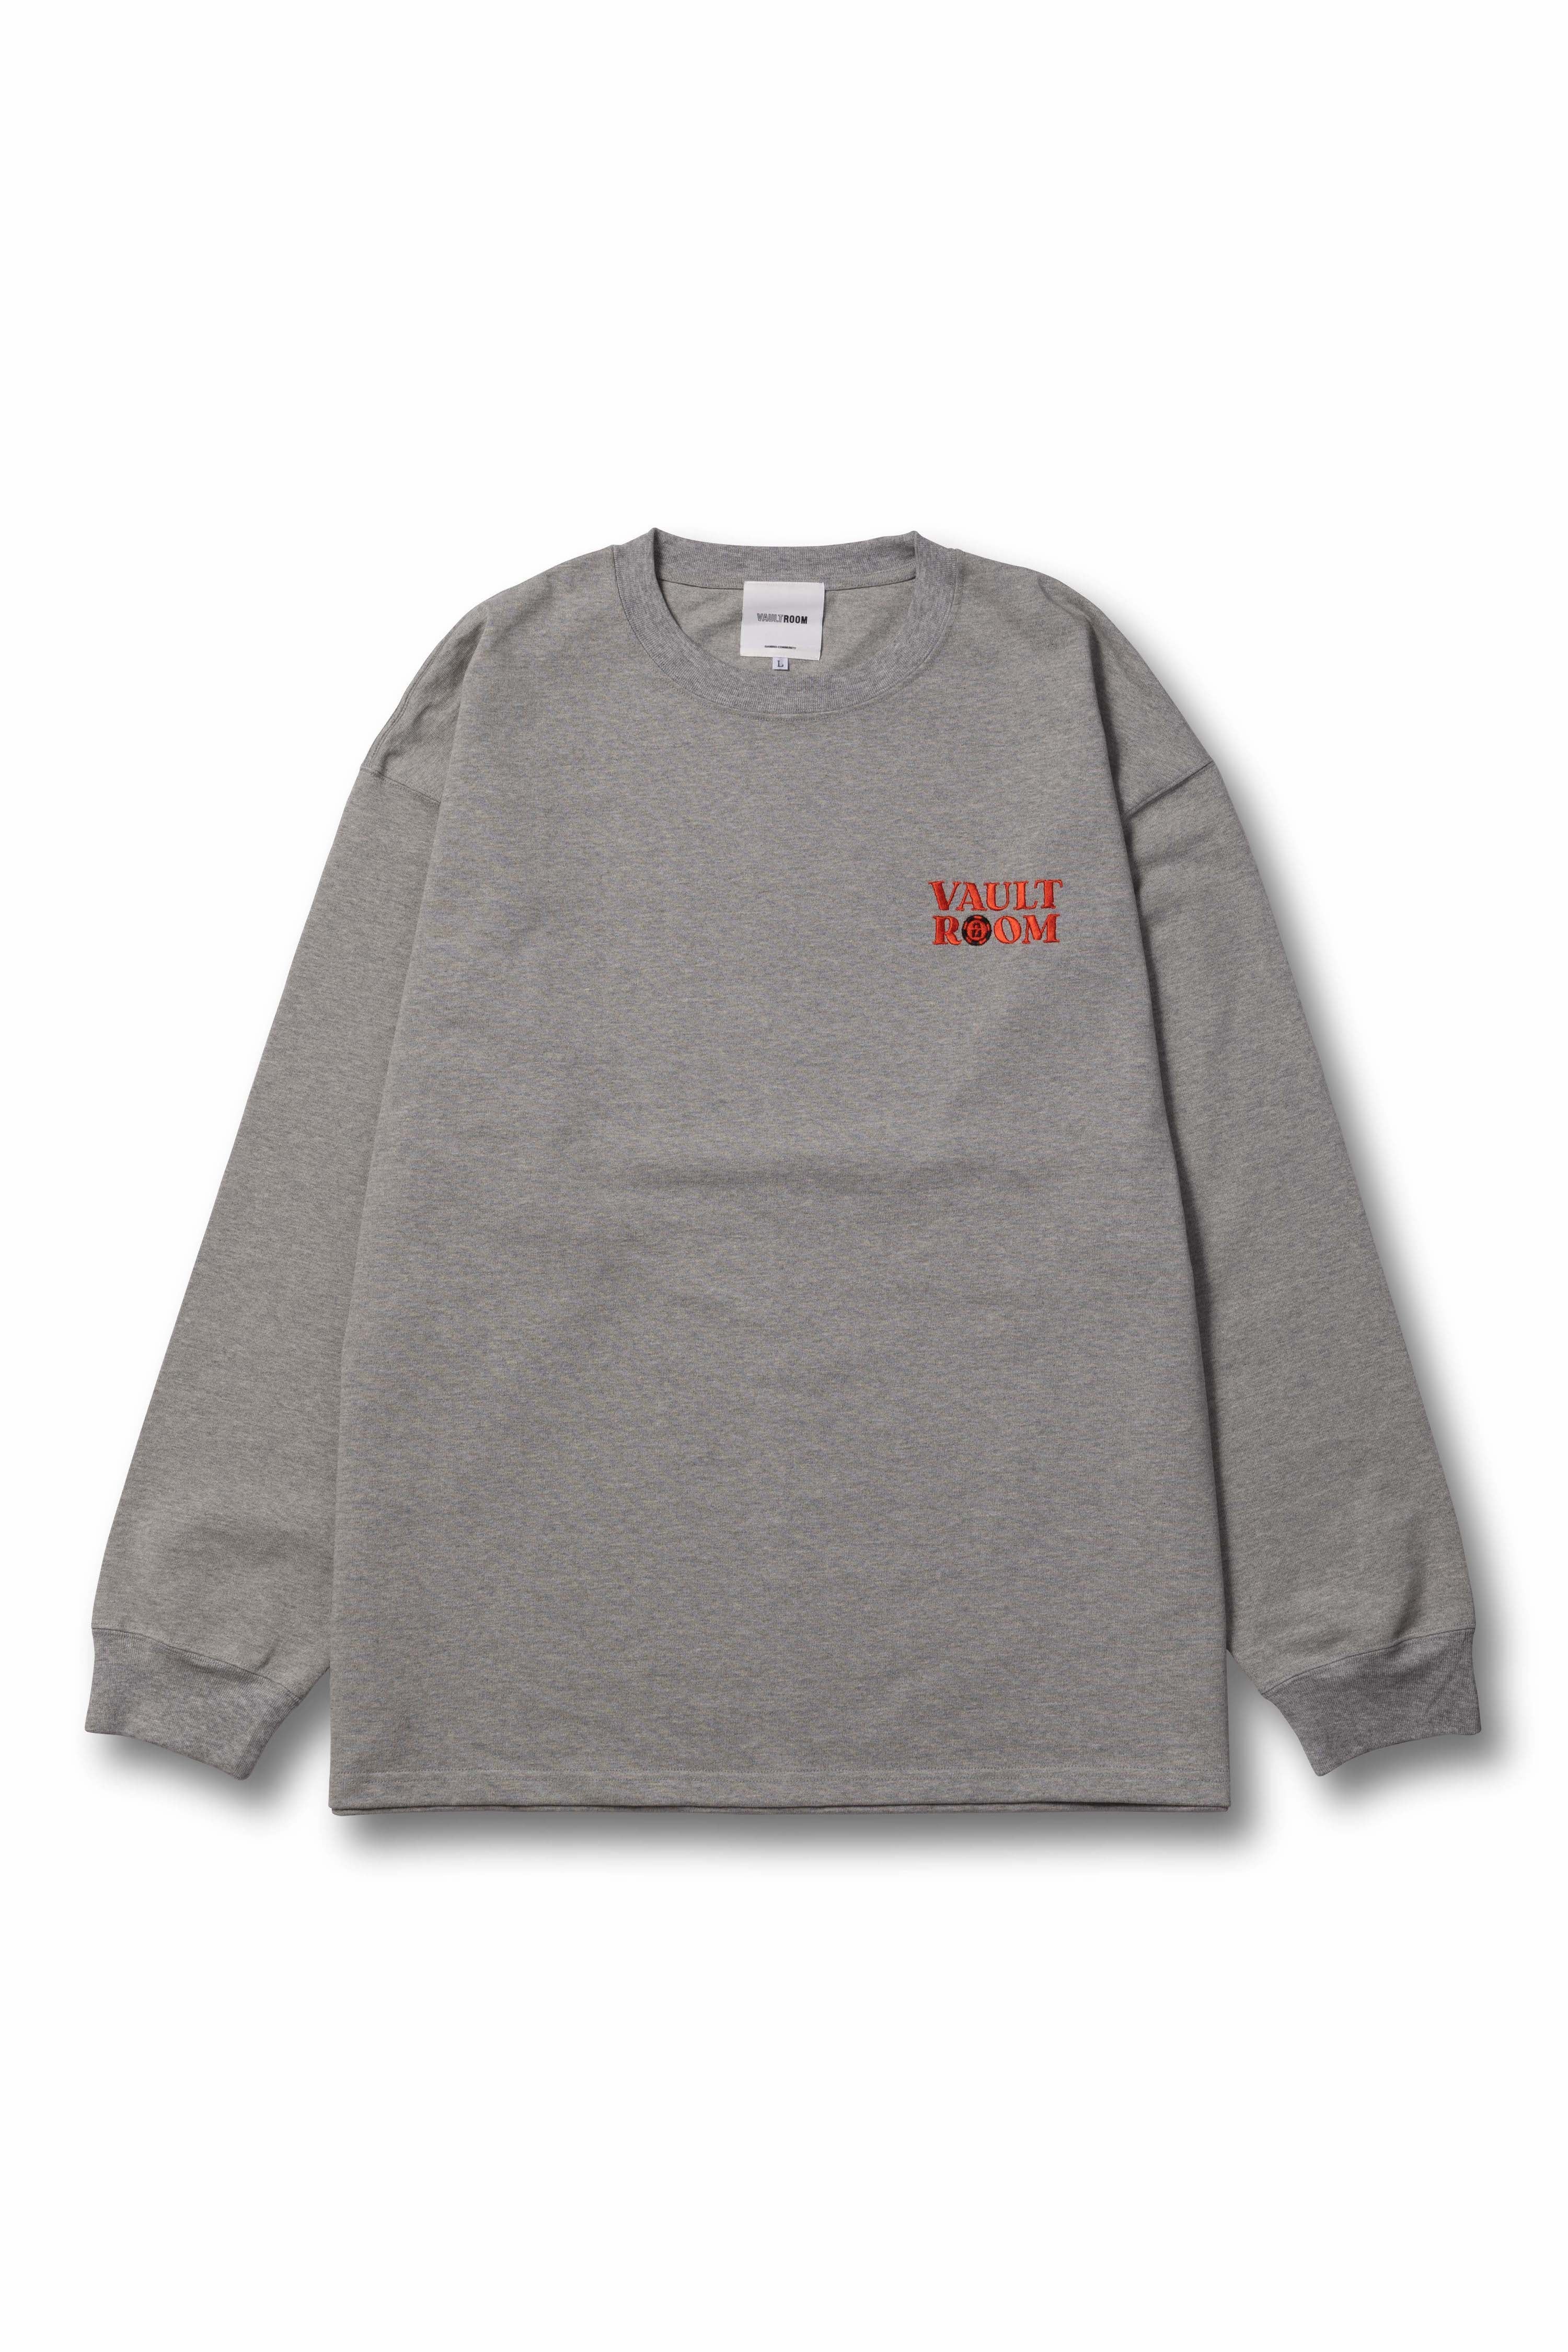 vaultroom ボルトルーム ロンT - Tシャツ/カットソー(七分/長袖)